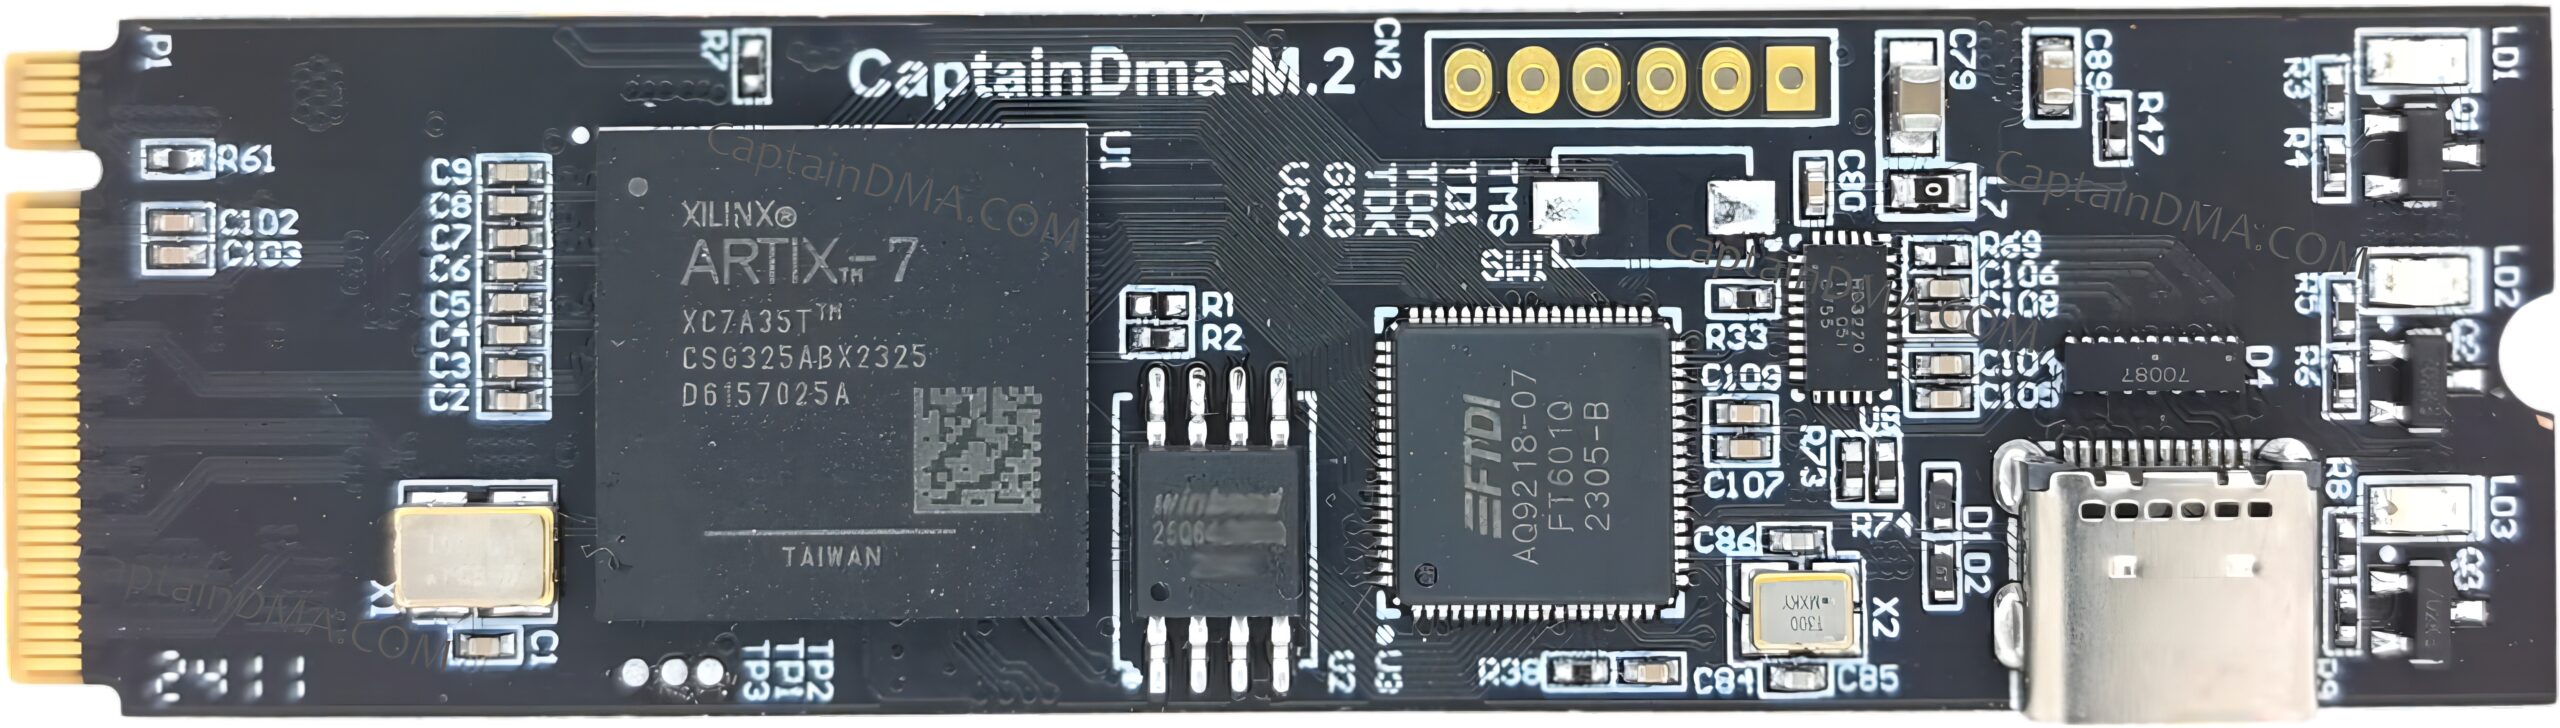 CaptainDMA M.2